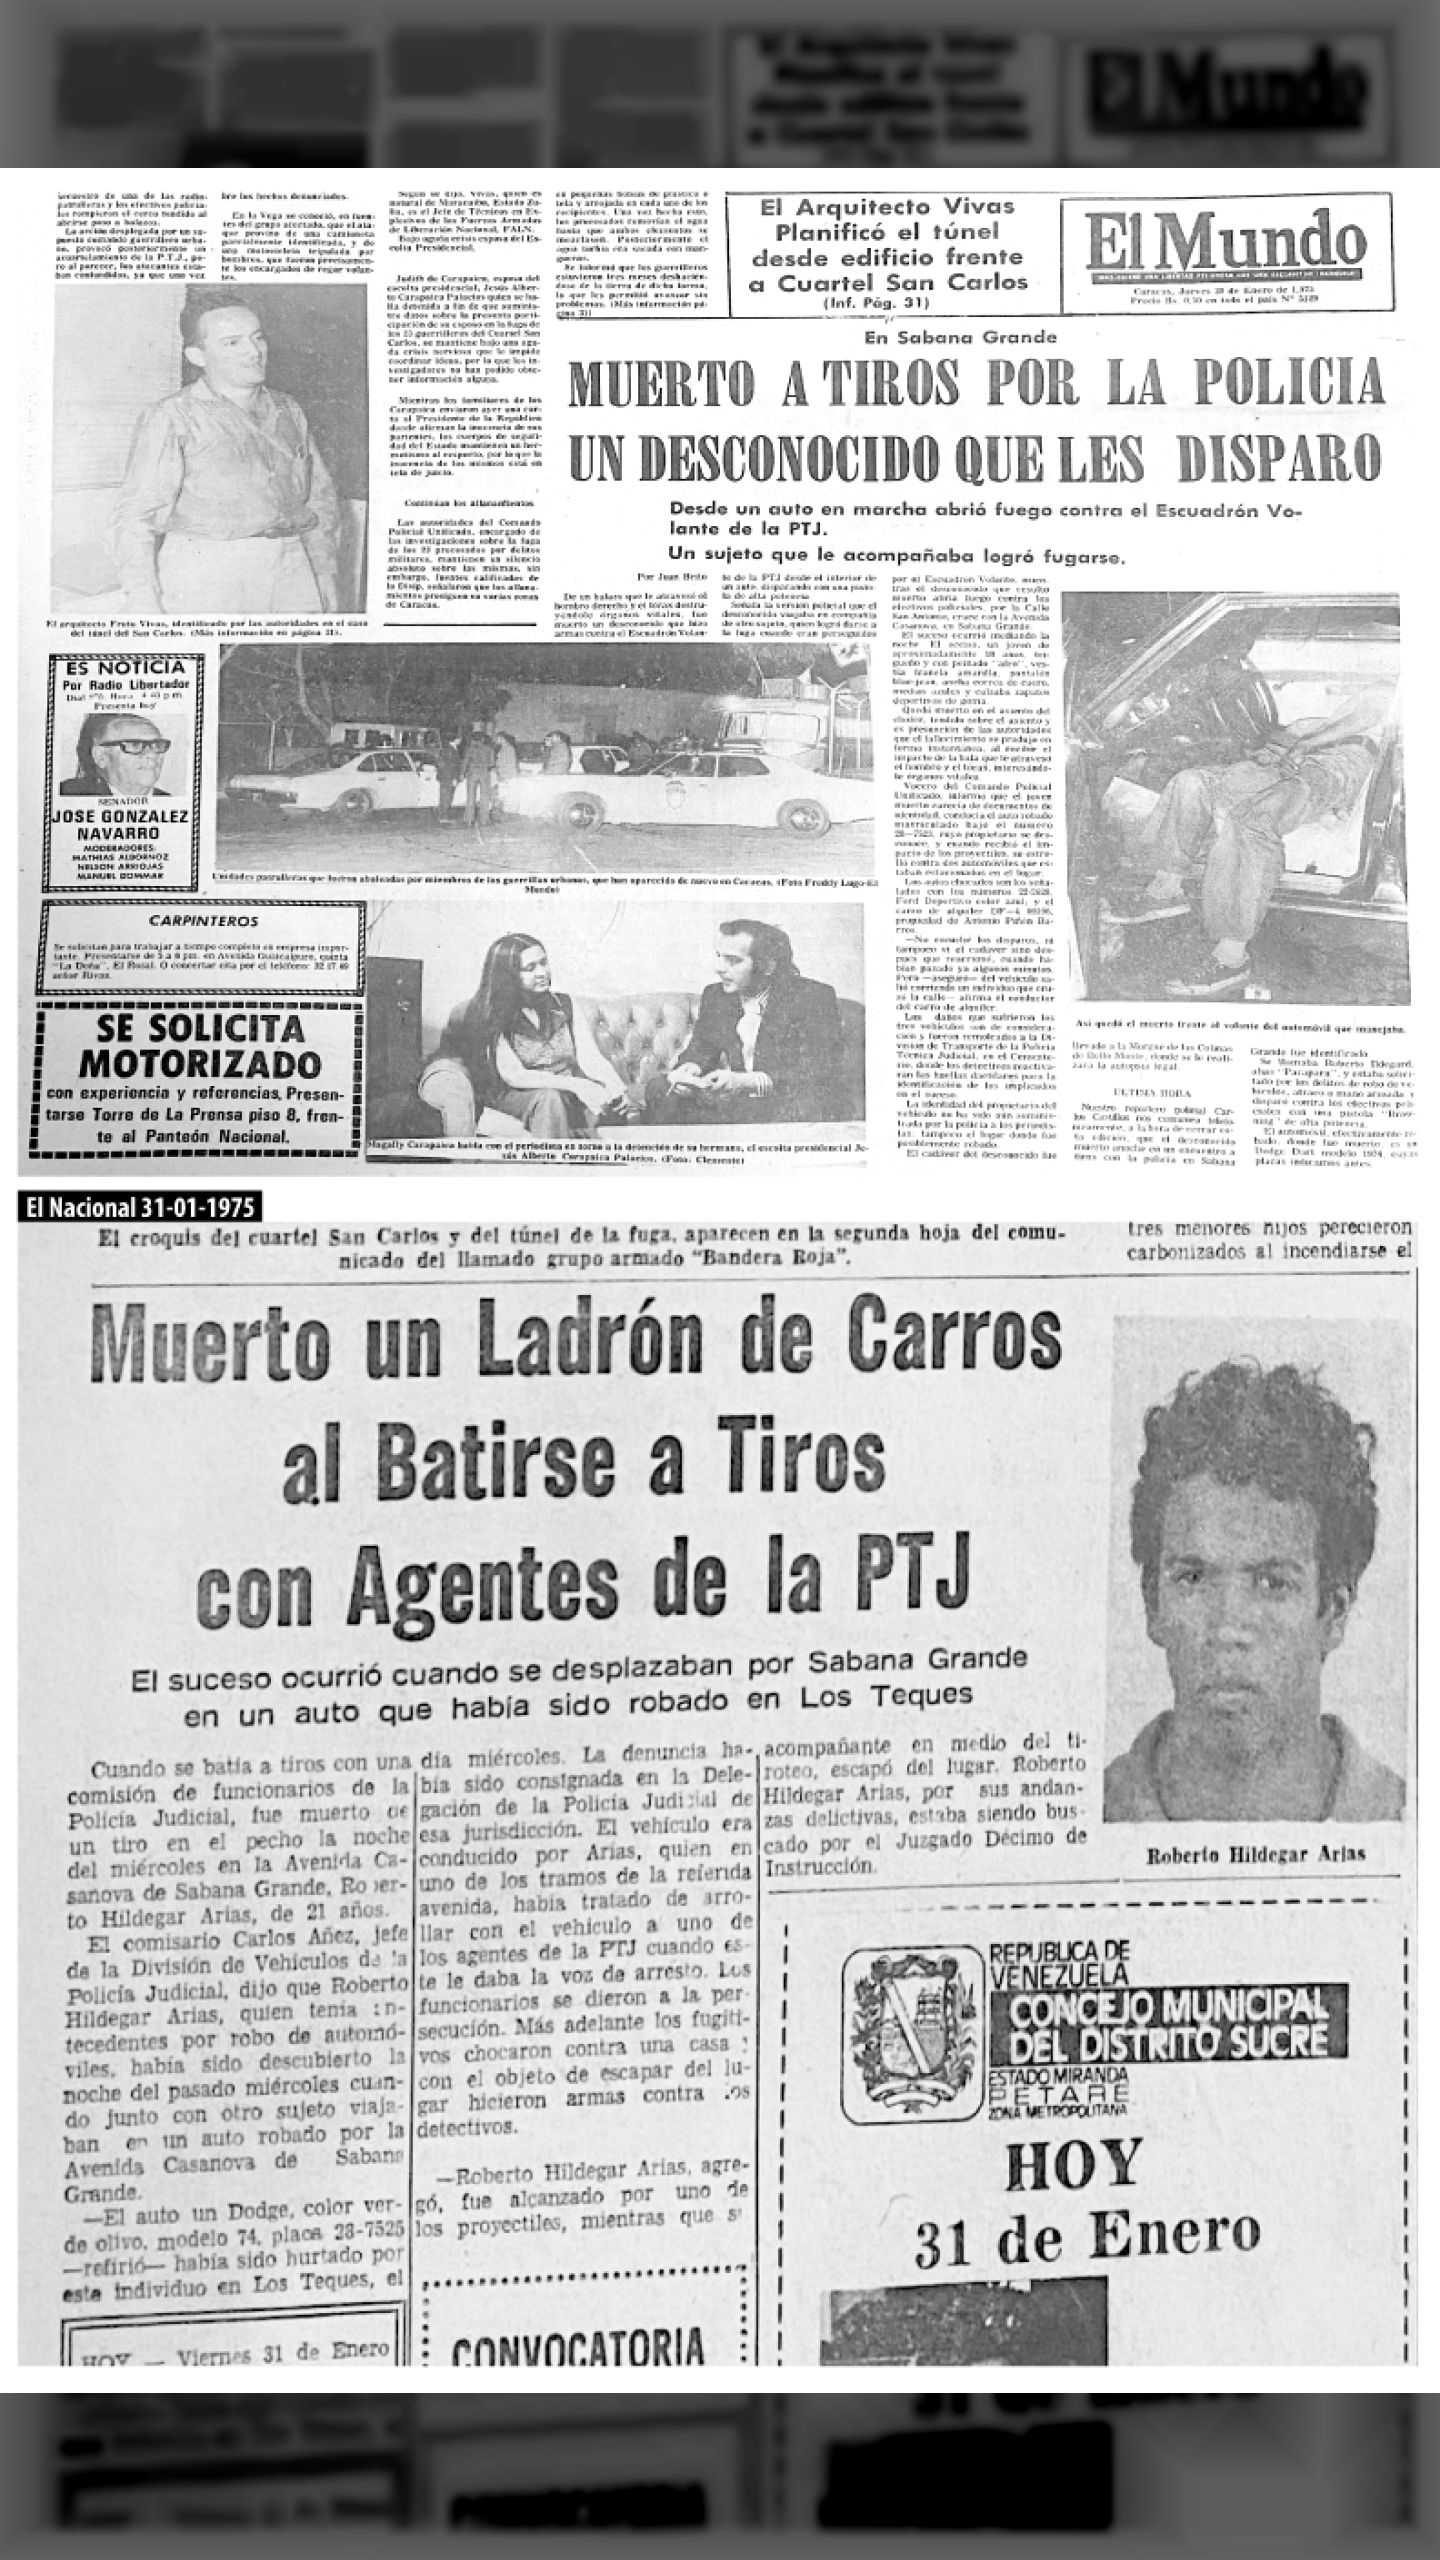 ES ASESINADO EL JOVEN REVOLUCIONARIO ROBERTO ILDEGARD ARIAS (El Mundo, 30 de enero 1975)